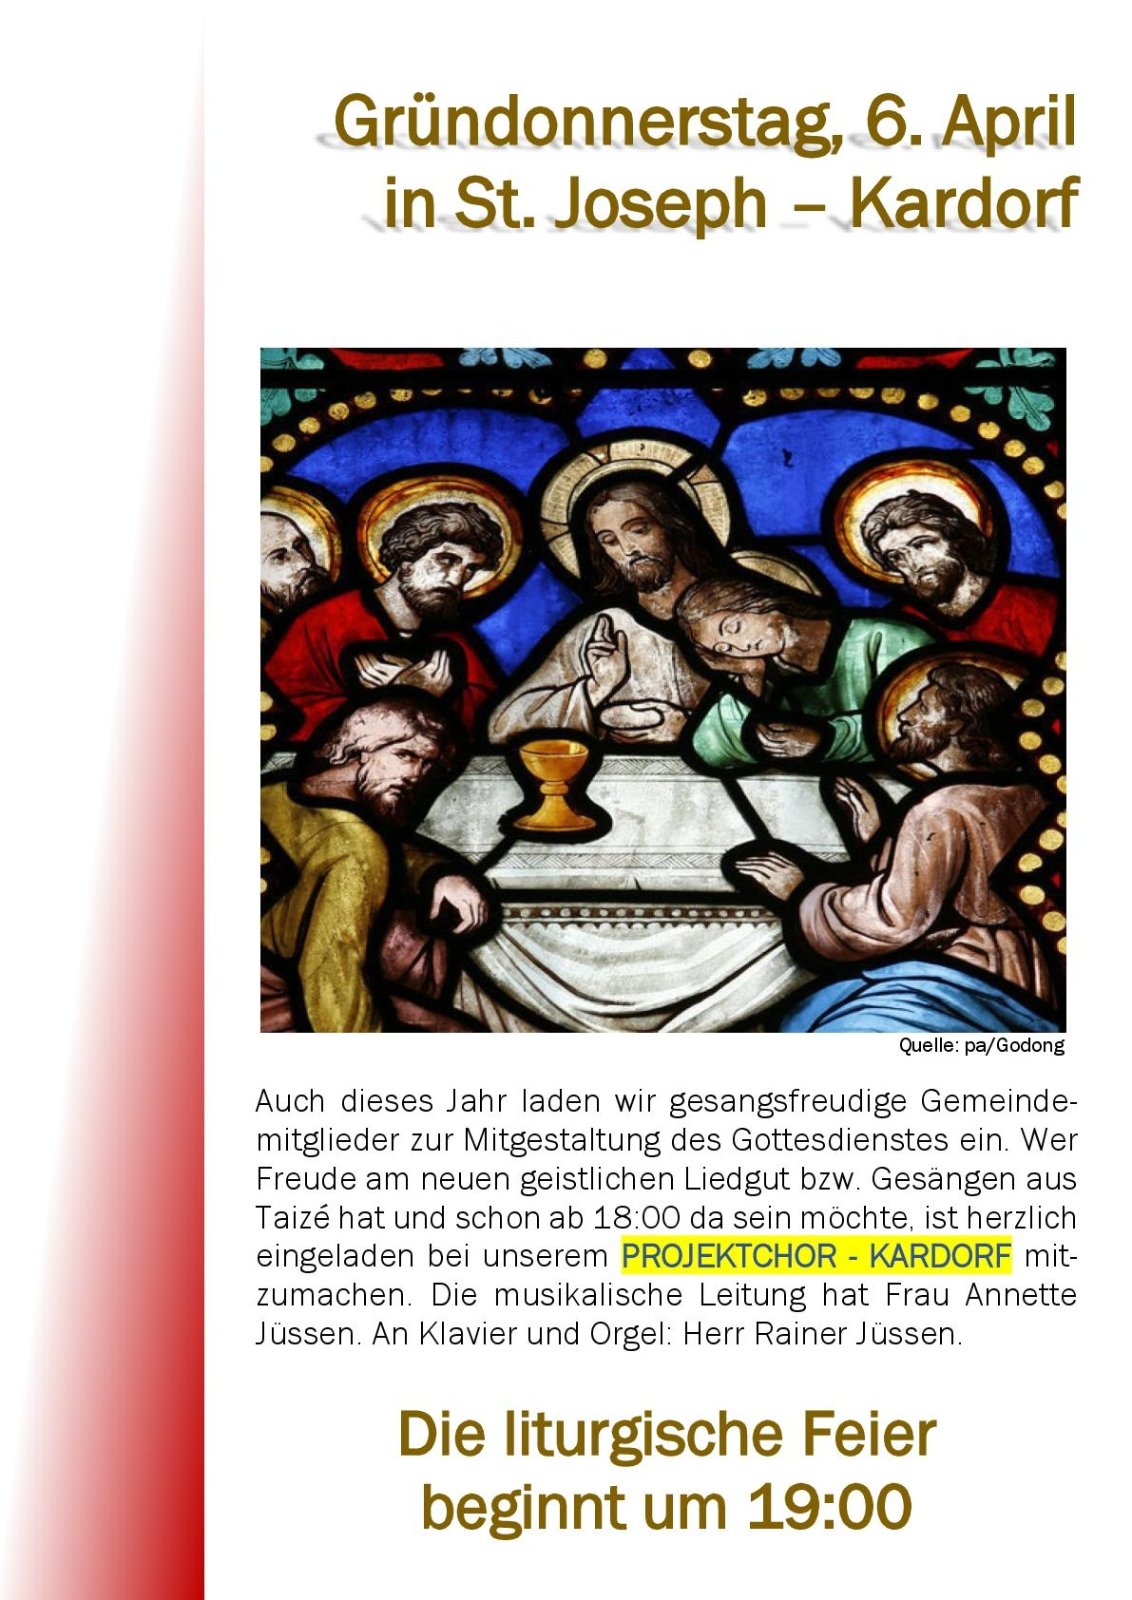 Gründonnerstag in Kardorf - Plakat2-001 (c) Kirchengemeinde St. Joseph